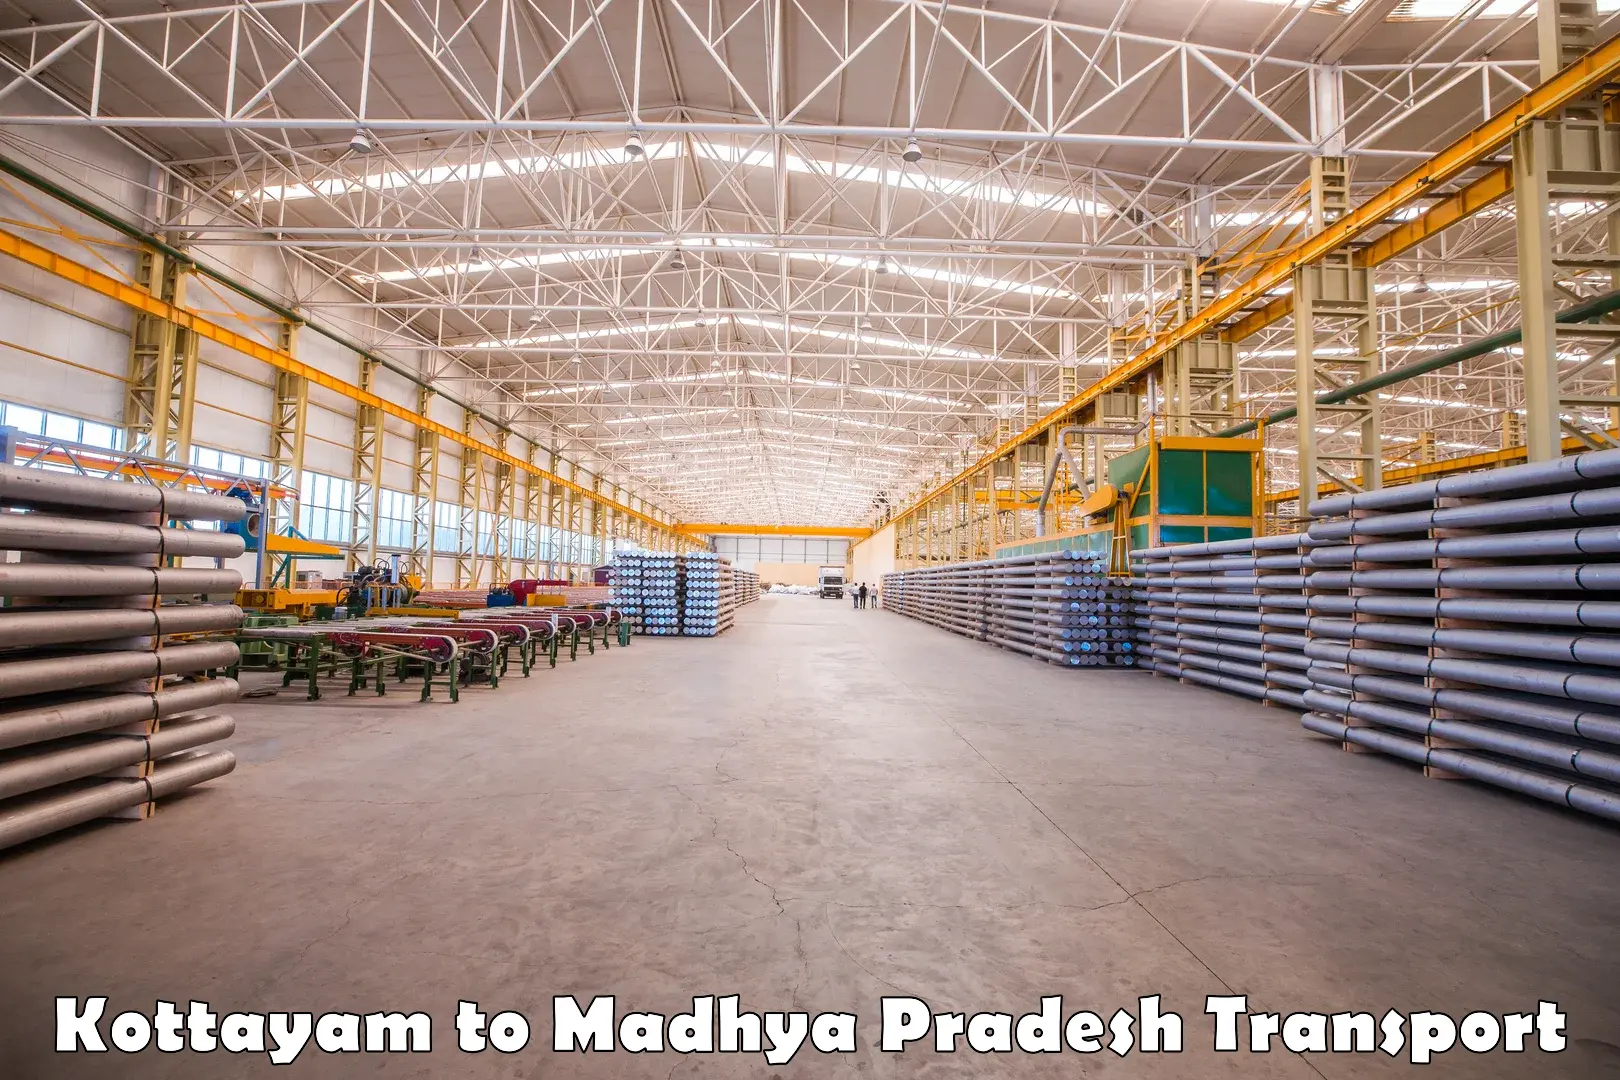 Online transport service Kottayam to Madhya Pradesh